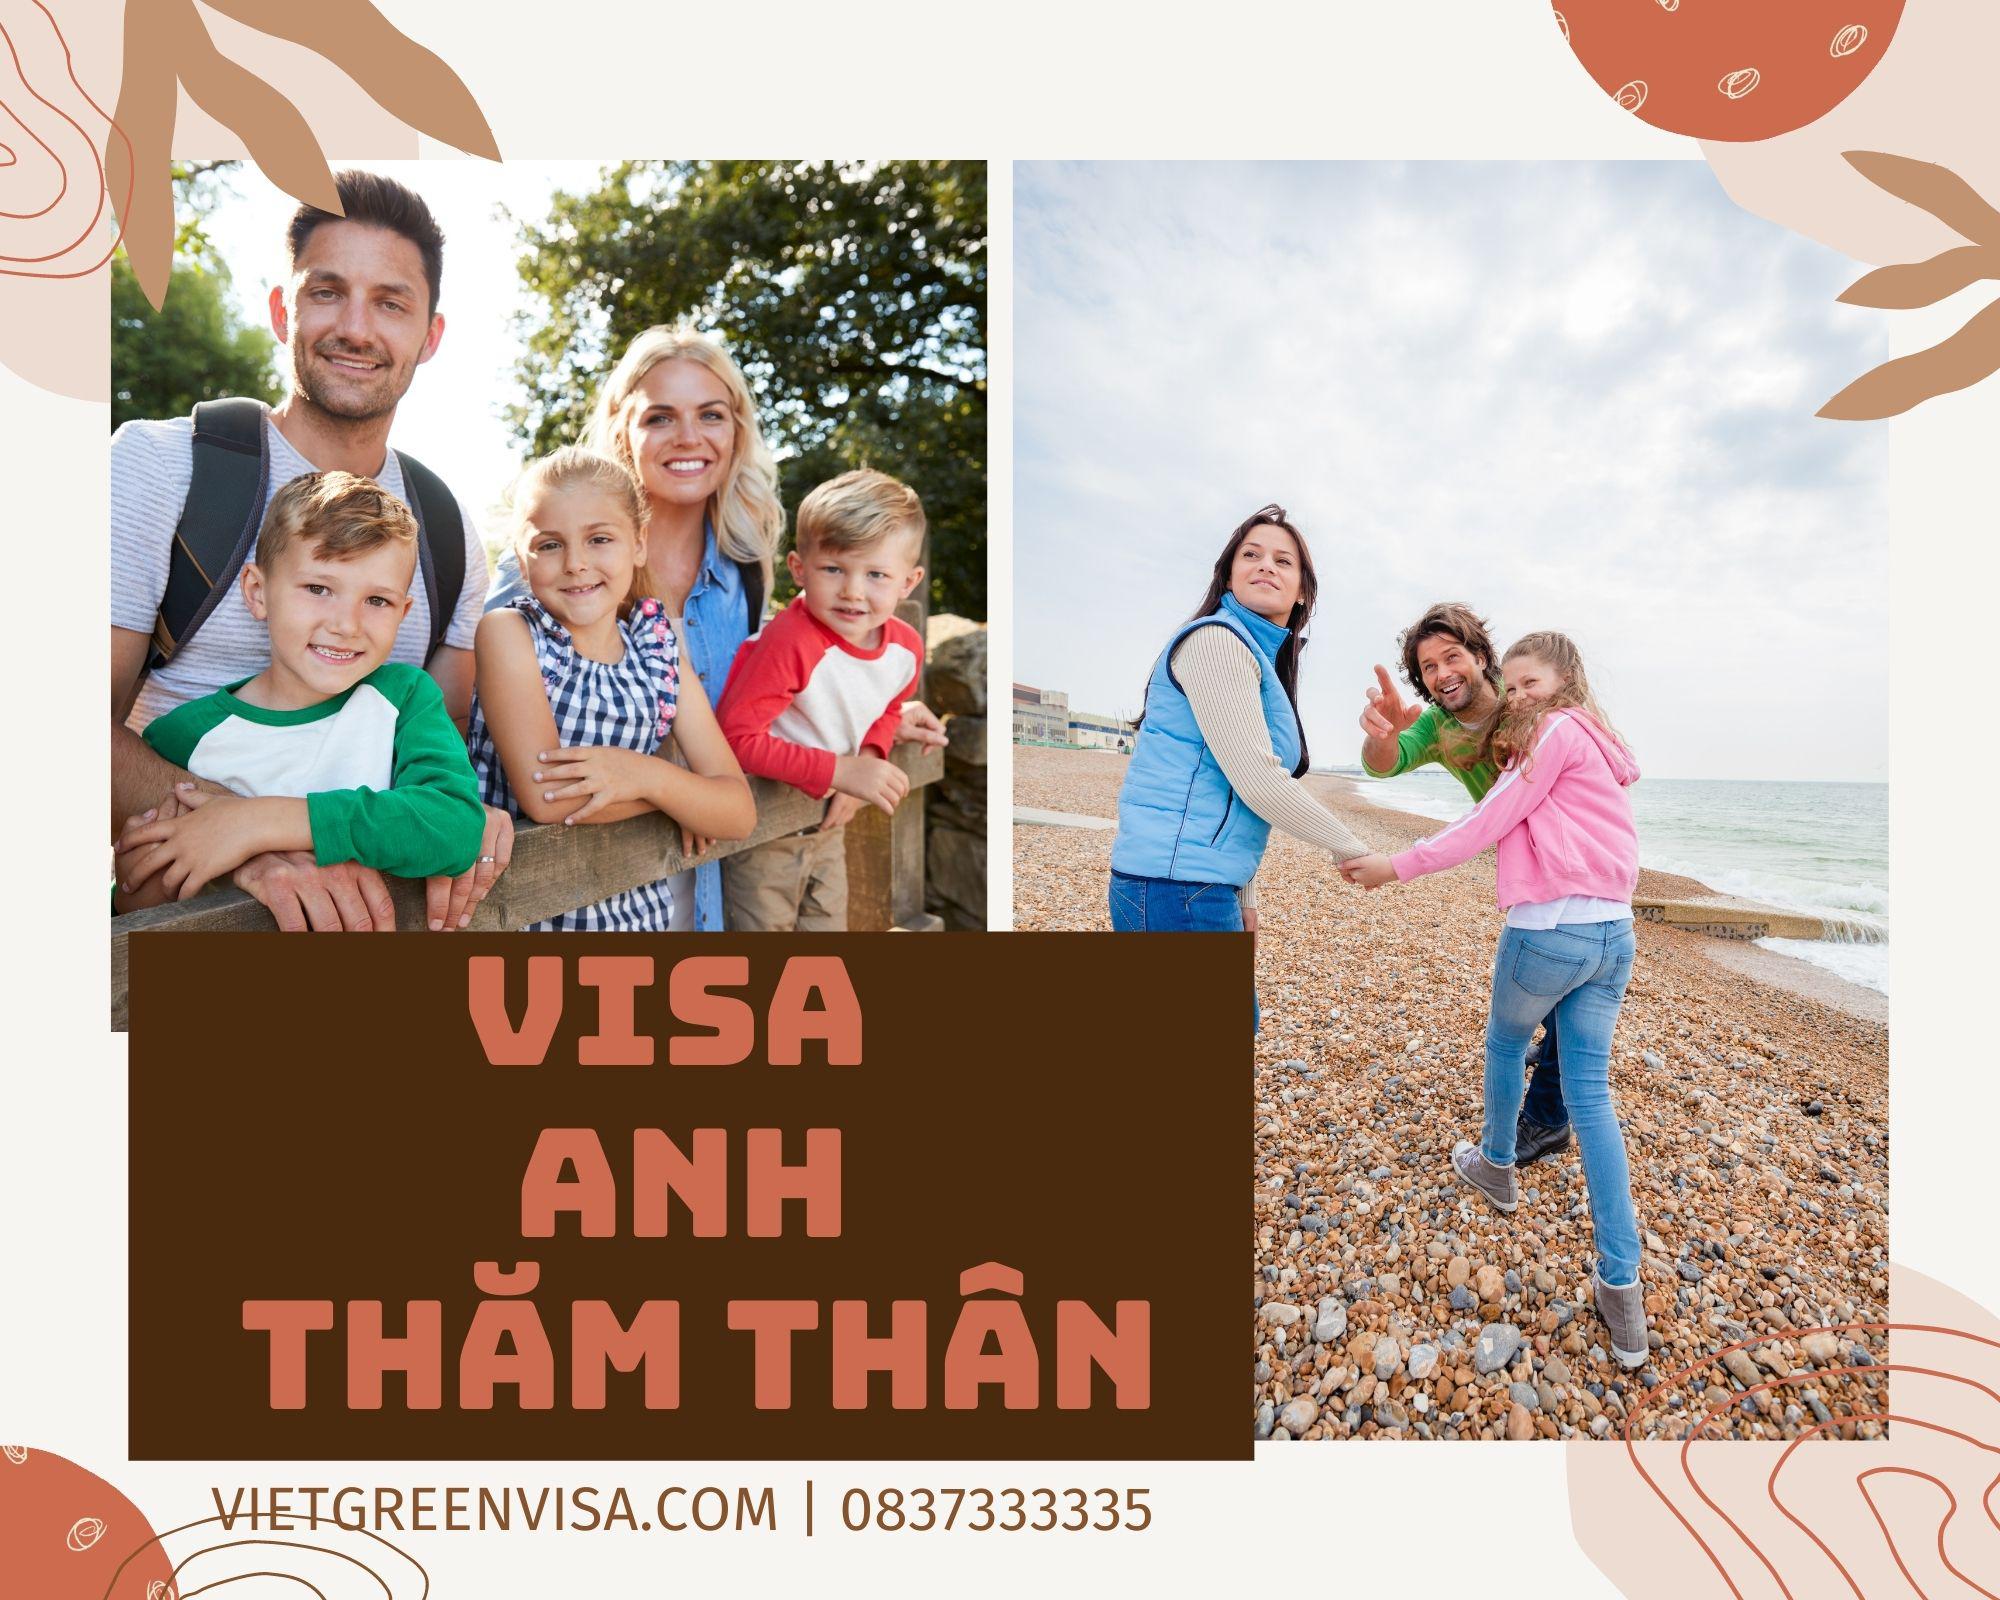 Dịch vụ xin visa đi Anh diện thăm thân uy tín